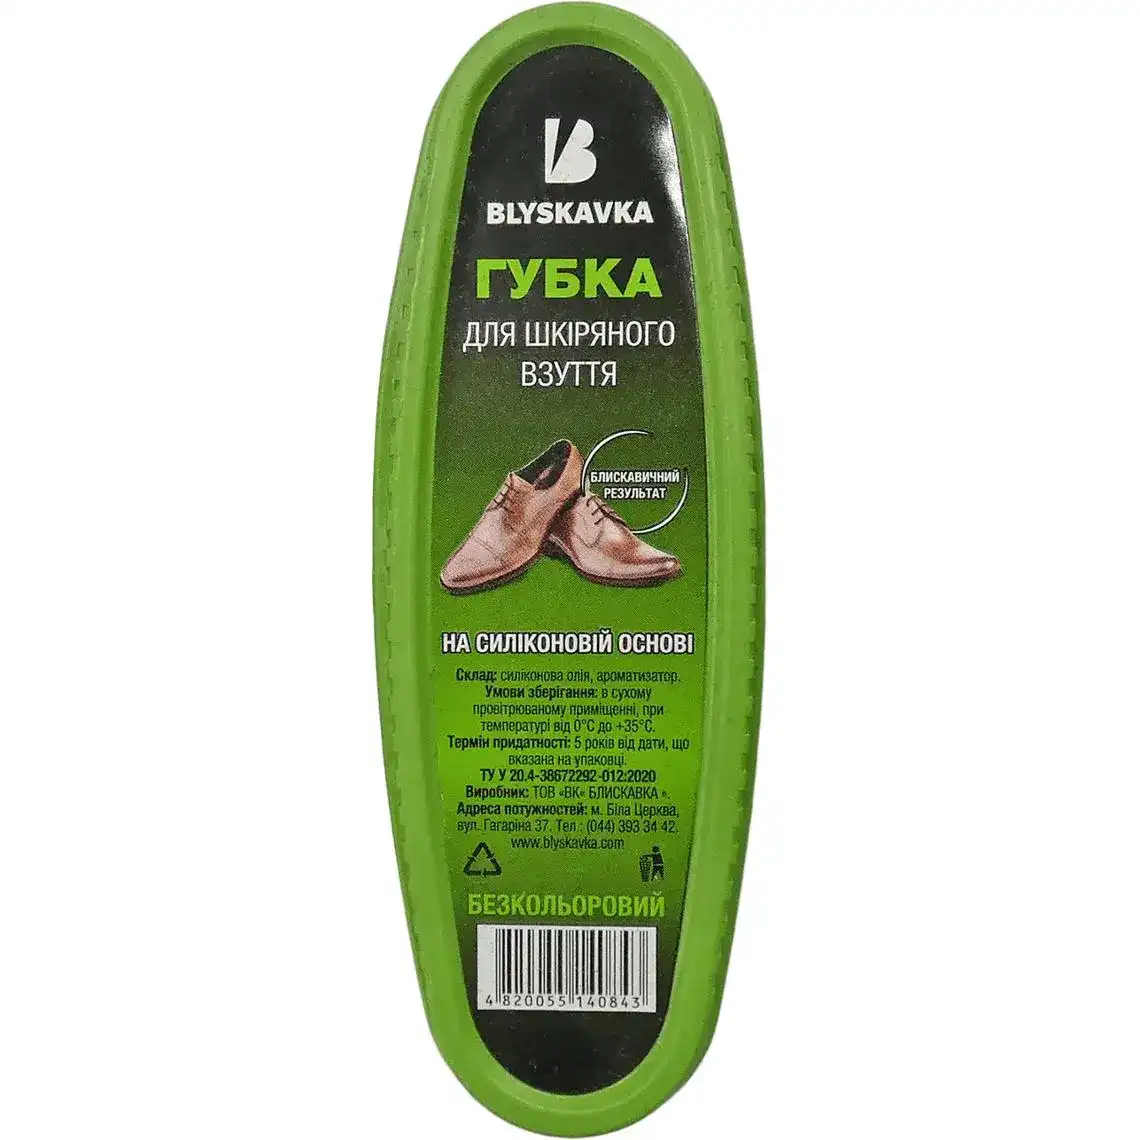 Фото 1 - Губка Blyskavka Premium для шкіряного взуття безкольорова  1шт